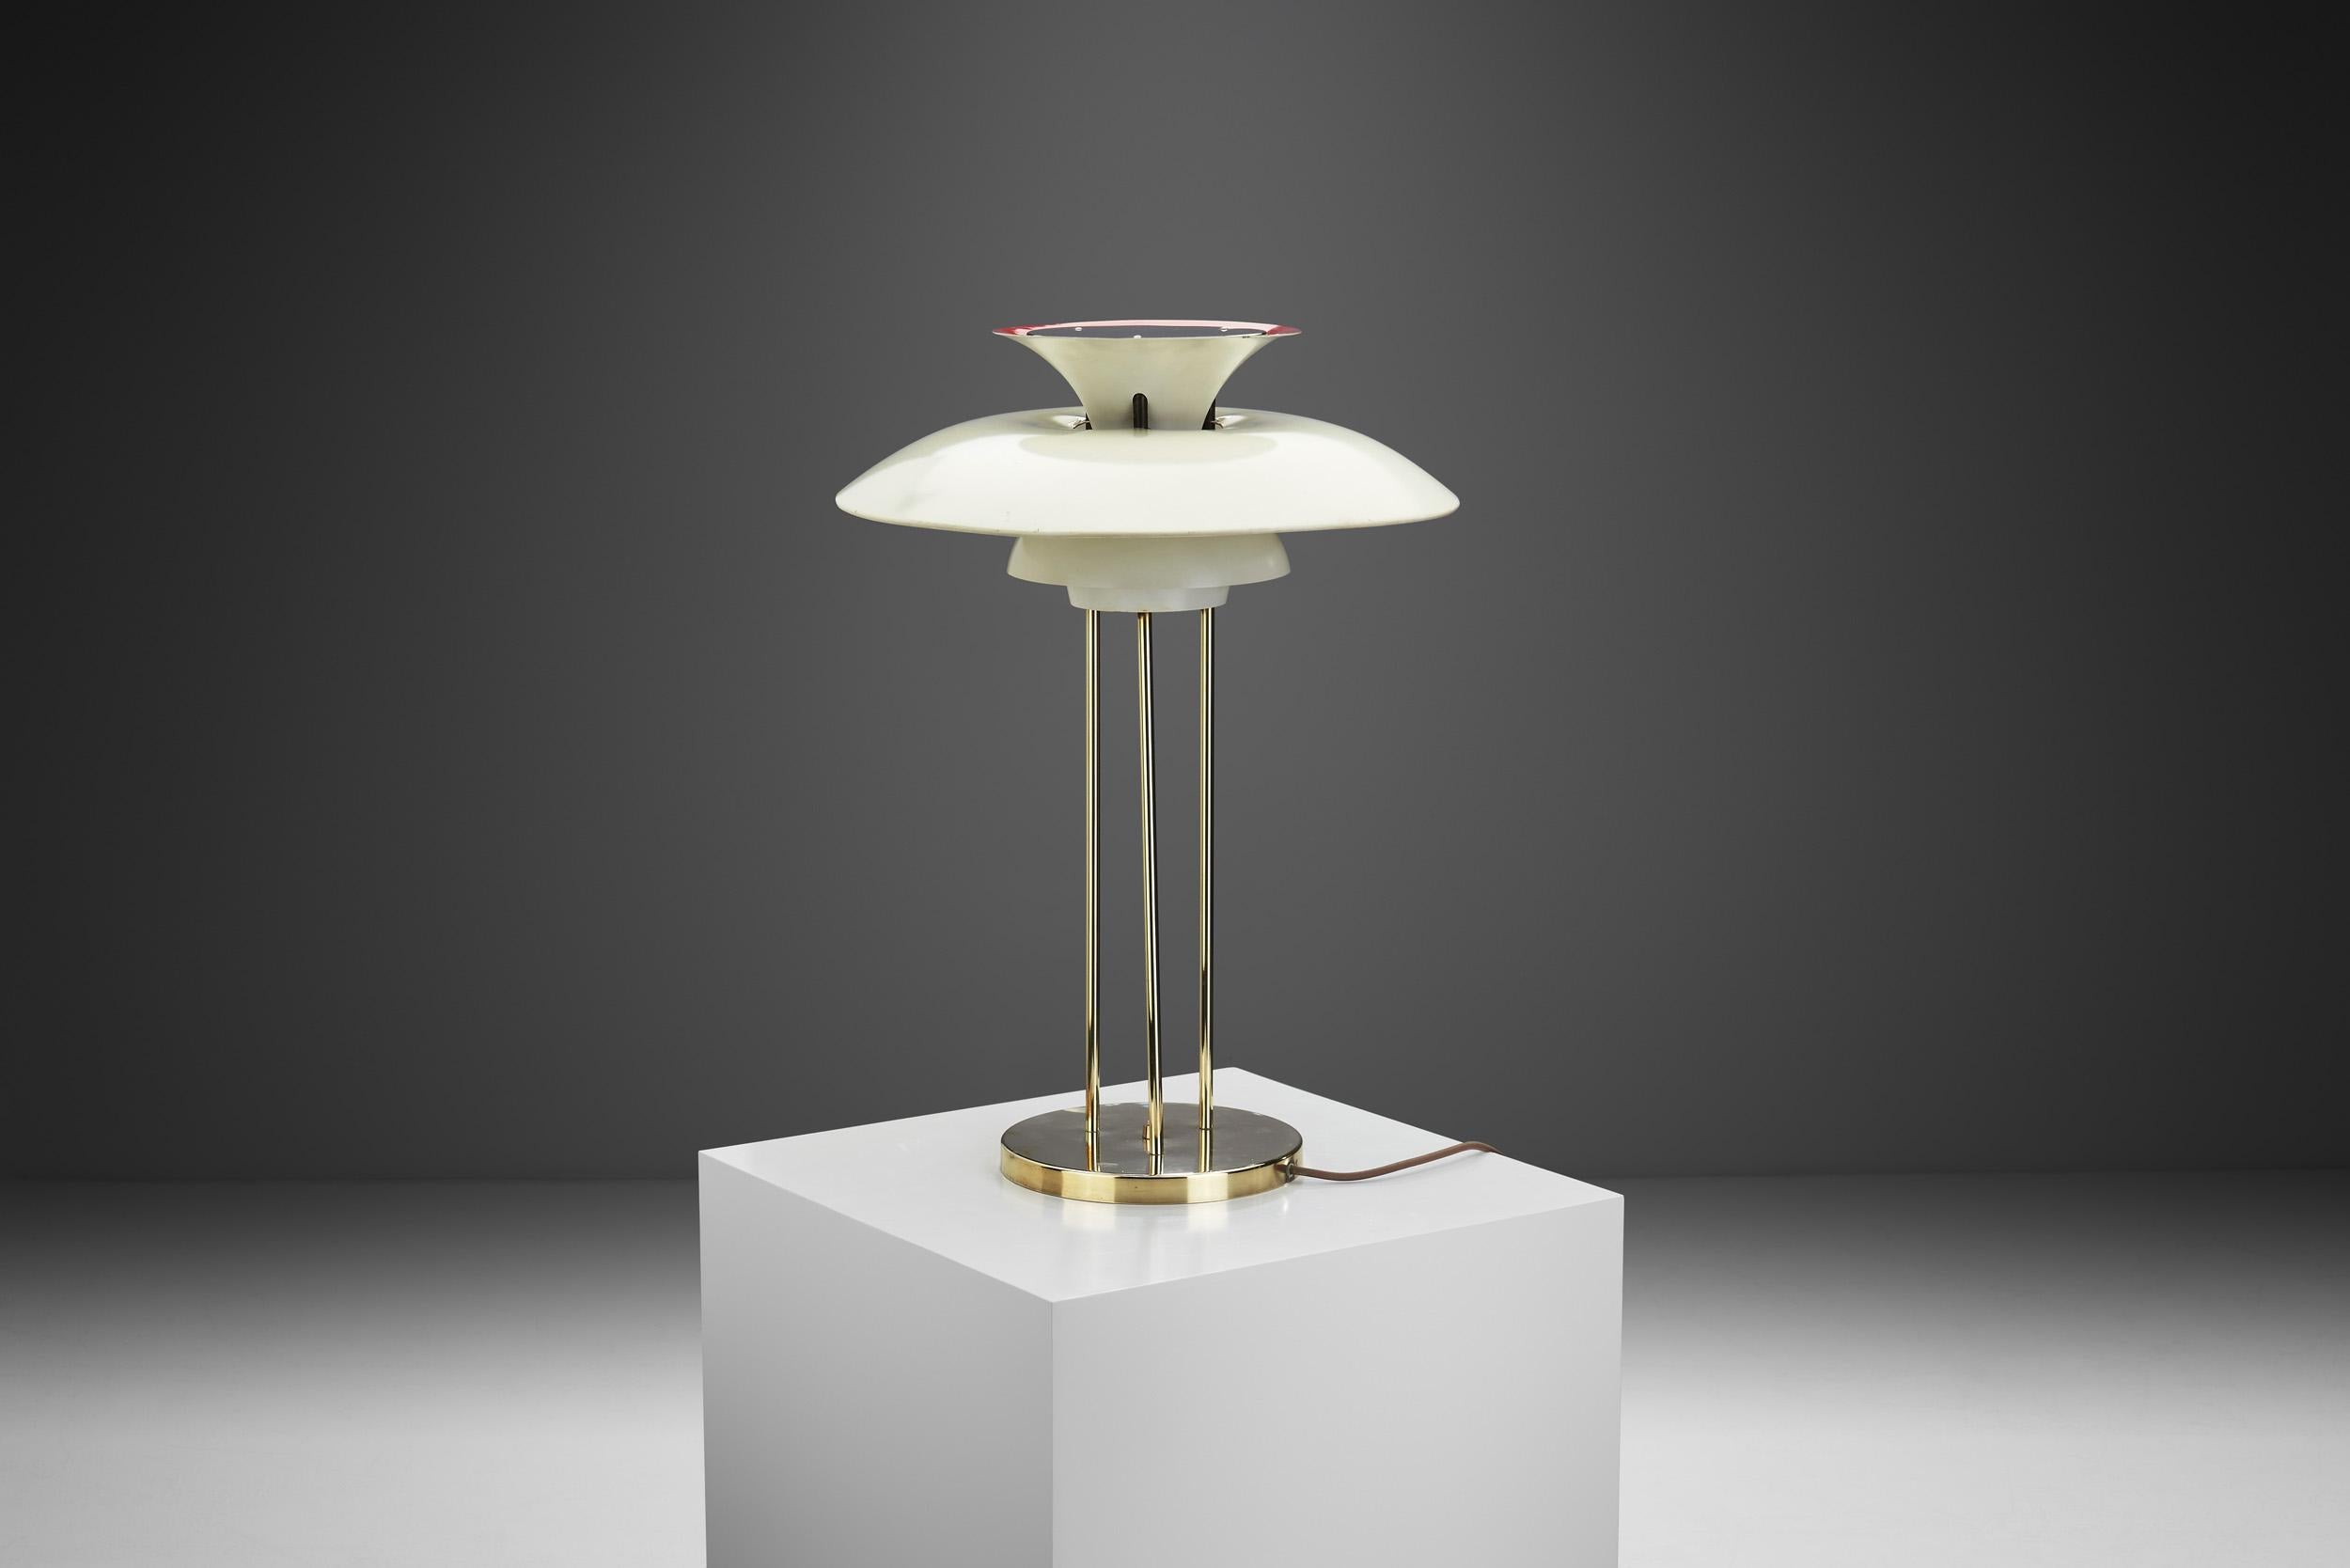 Metal Poul Henningsen “PH-5” Table Lamp for Louis Poulsen, Denmark, 1960s For Sale